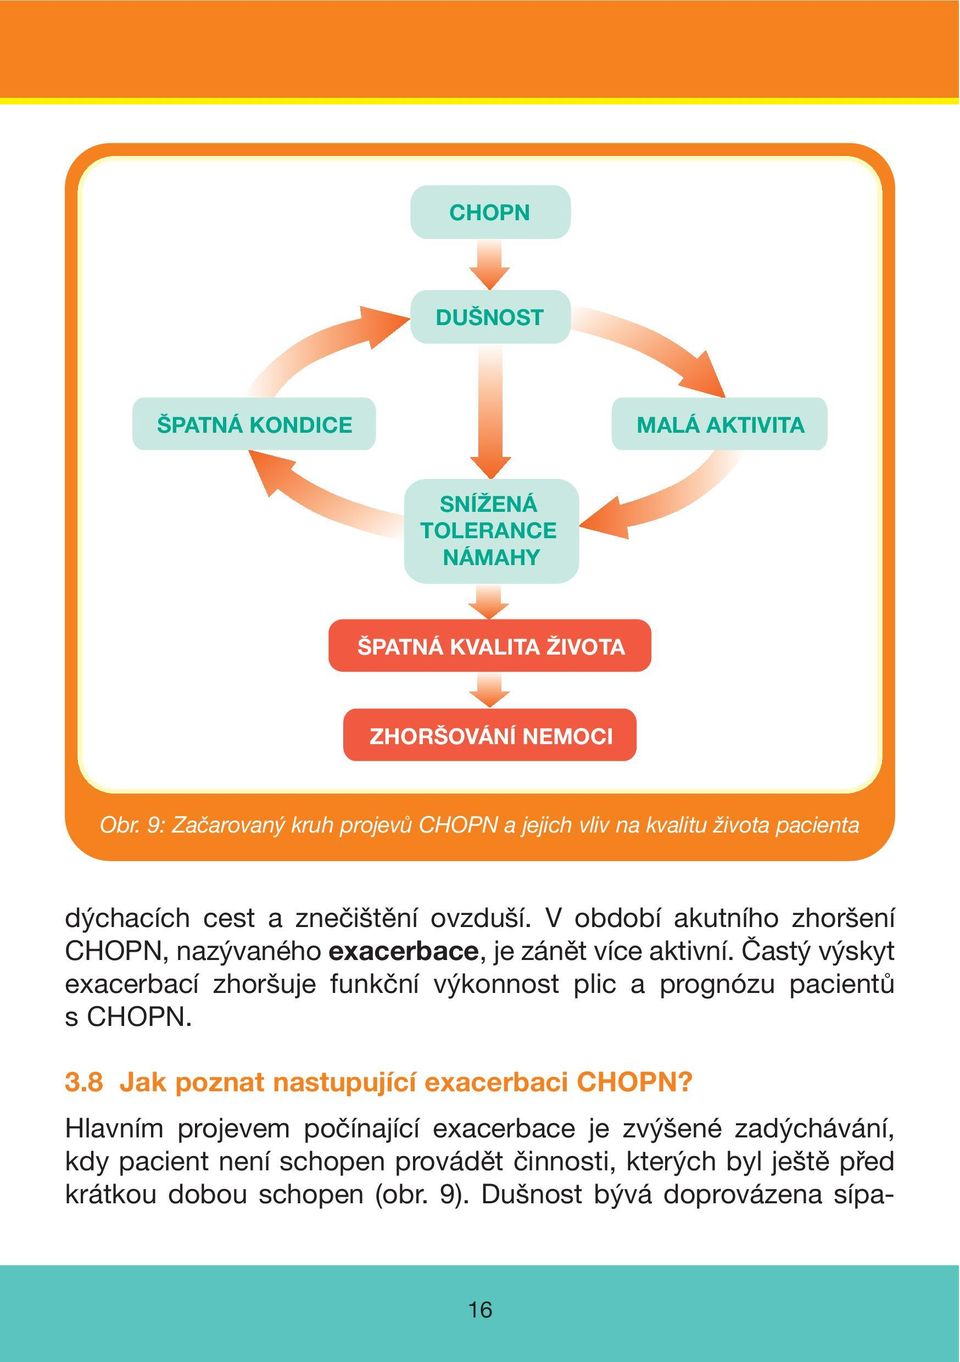 V období akutního zhoršení CHOPN, nazývaného exacerbace, je zánět více aktivní.